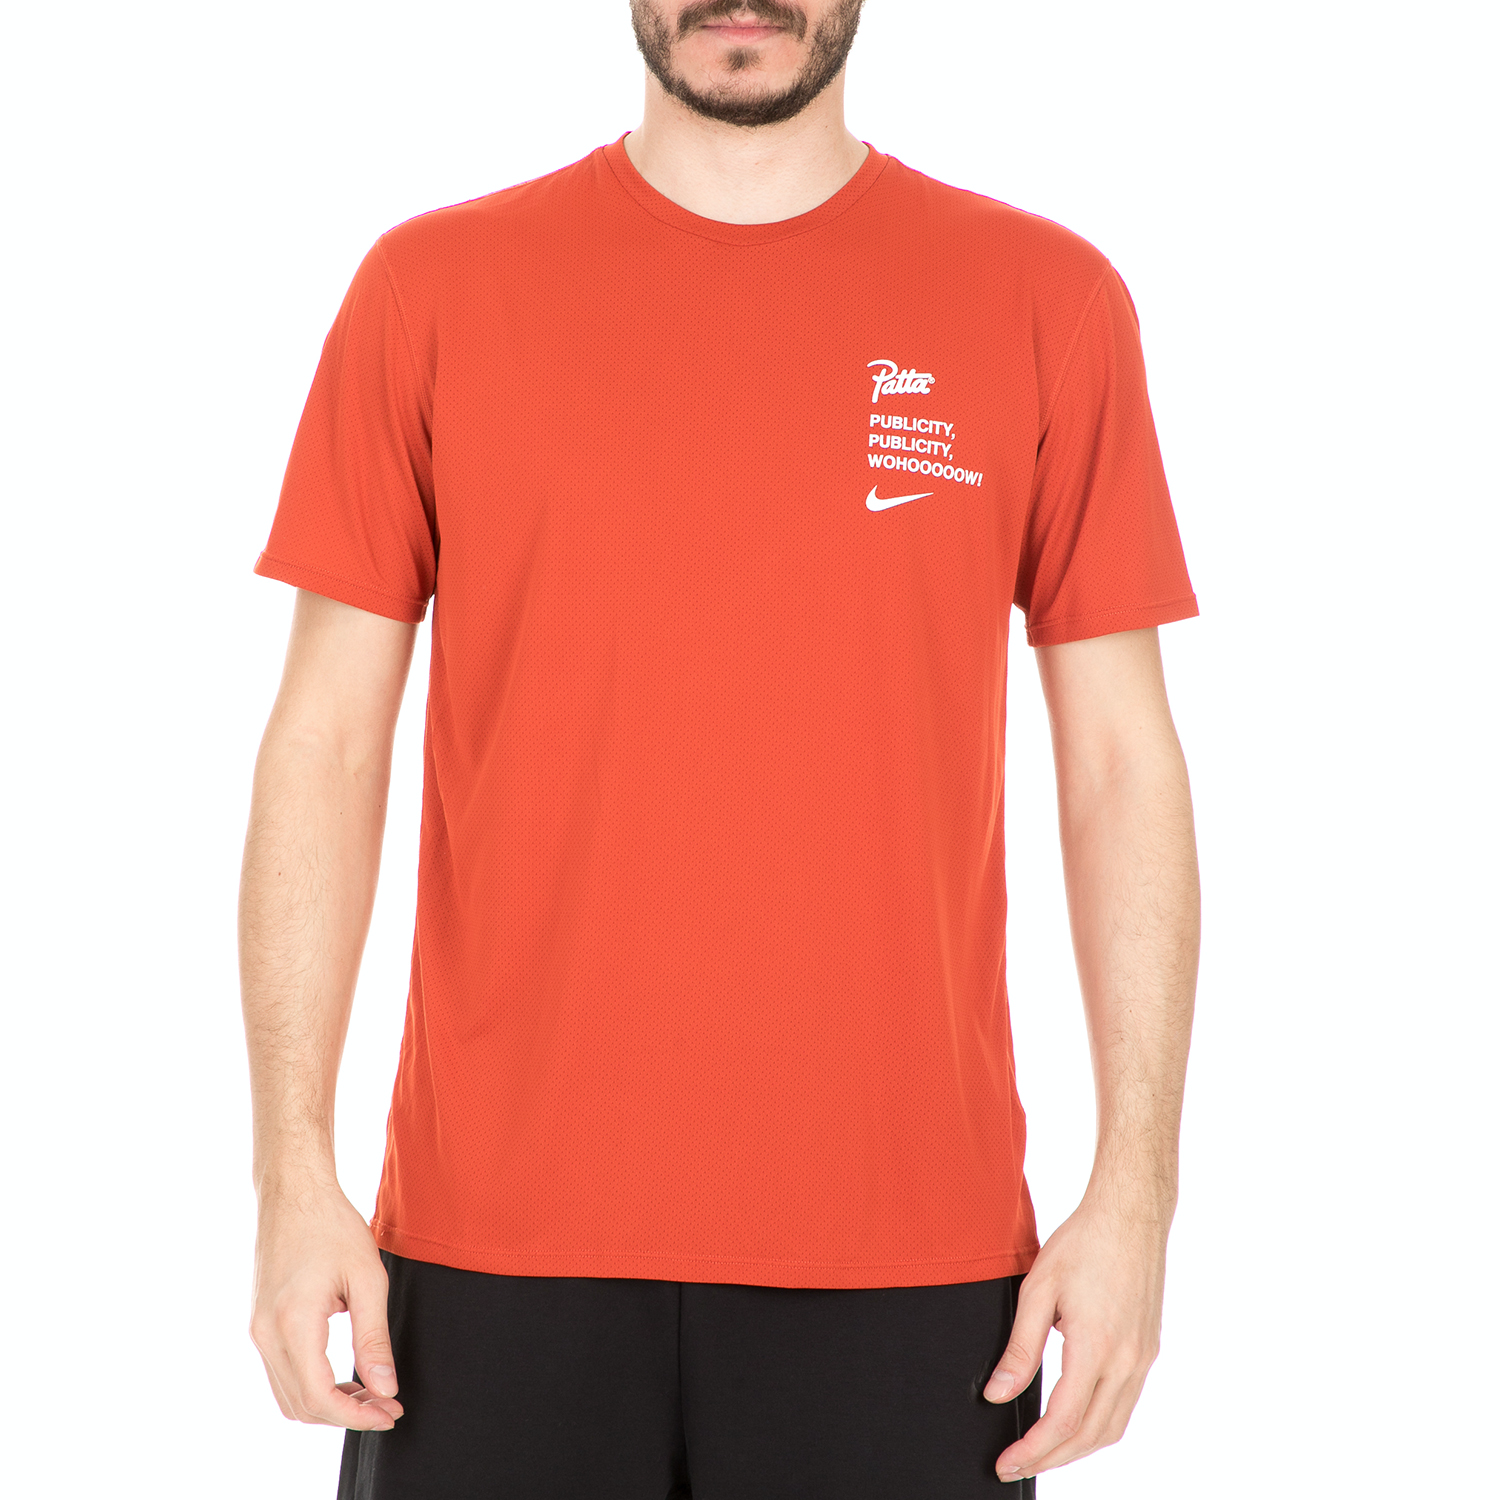 NIKE Ανδρικό t-shirt NIKE NRG X PATTA TOP πορτοκαλί